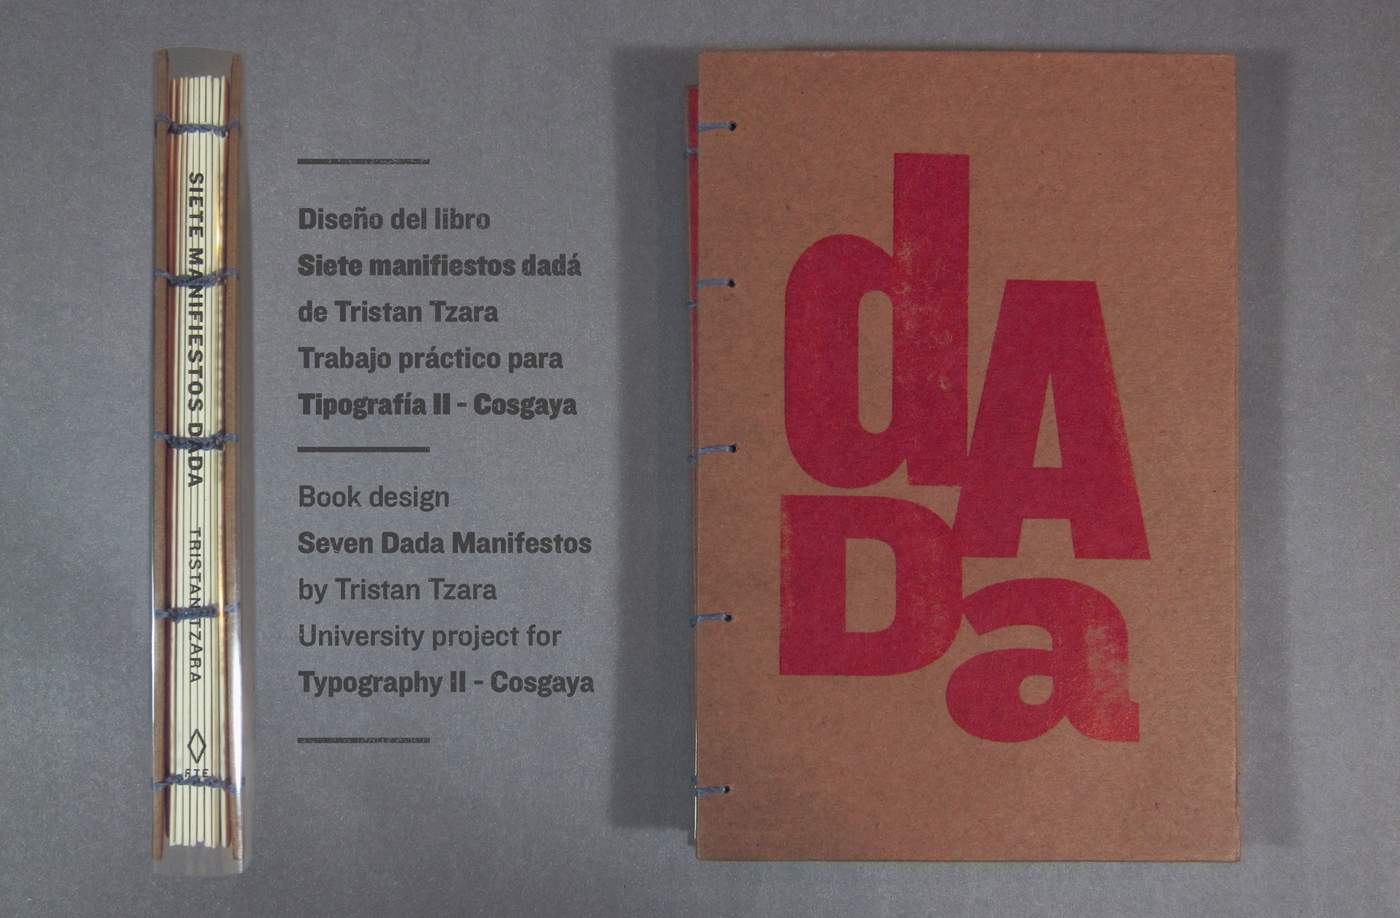 book libro book design Dada tristan tzara cosgaya catedra cosgaya tipografia fadu